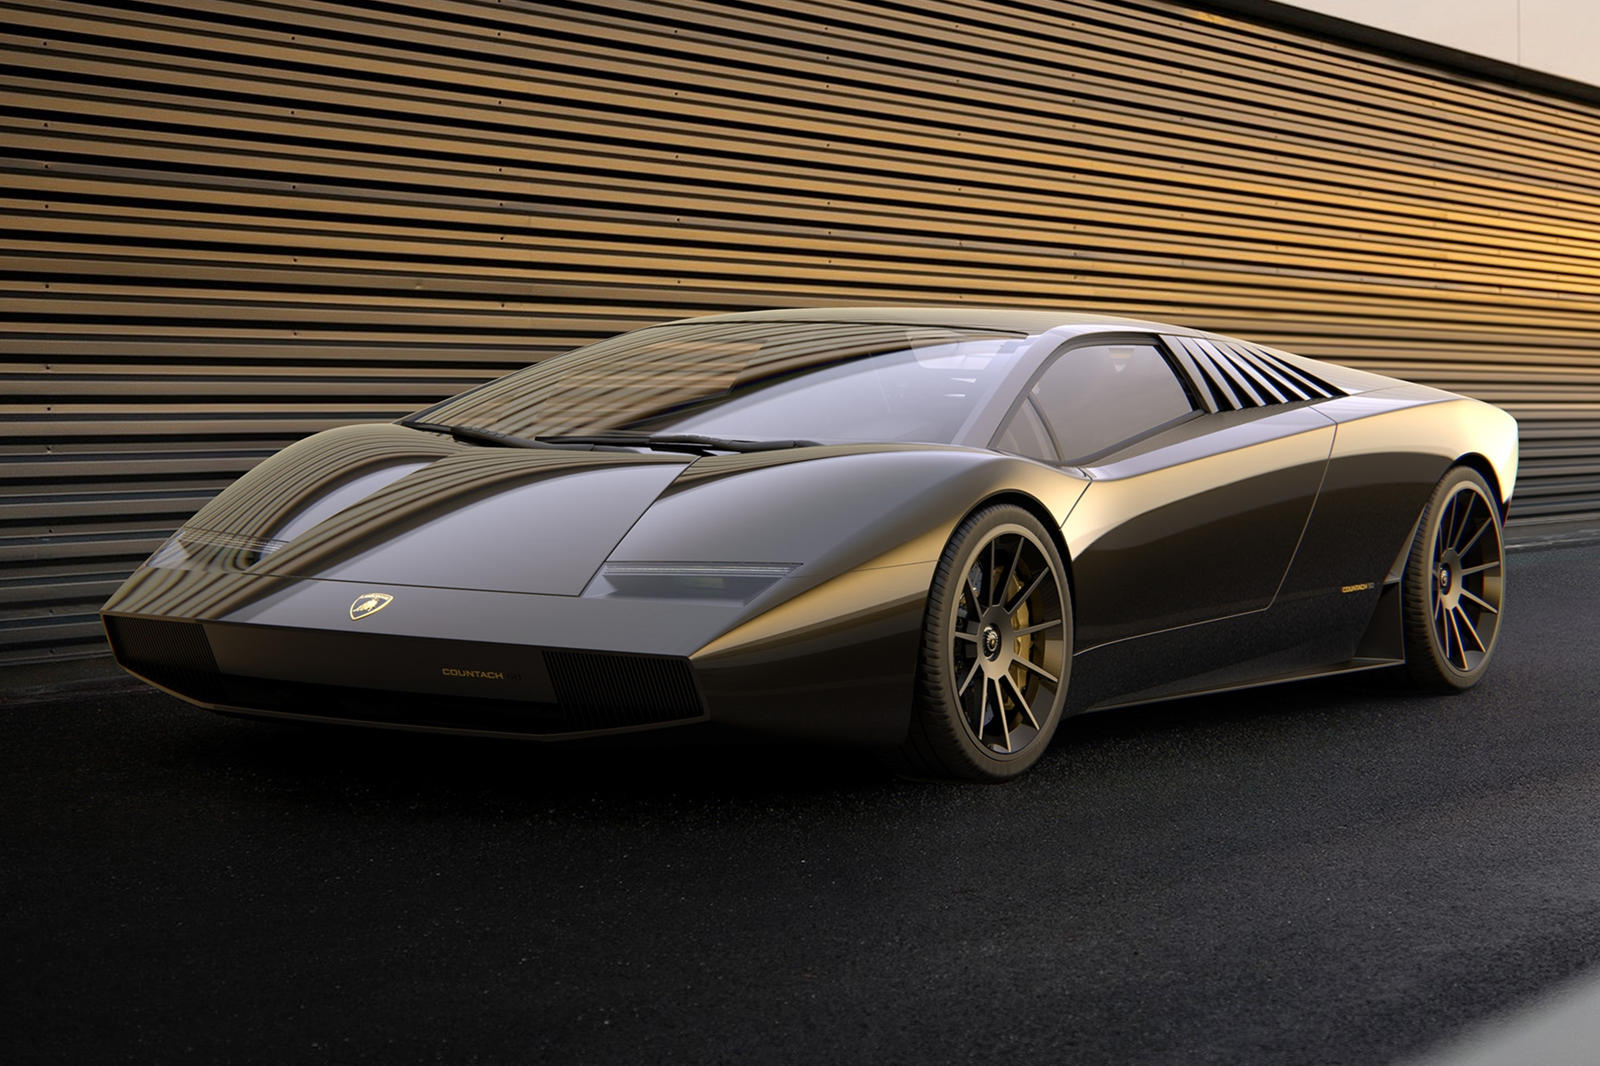 Lamborghini Countach был, пожалуй, самой важной моделью в истории компании, с тех пор вдохновляя каждую модель Lambo. Легендарный суперкар недавно отпраздновал свое 50-летие, и даже сегодня это впечатляющая машина. Так что бы произошло, если бы Count